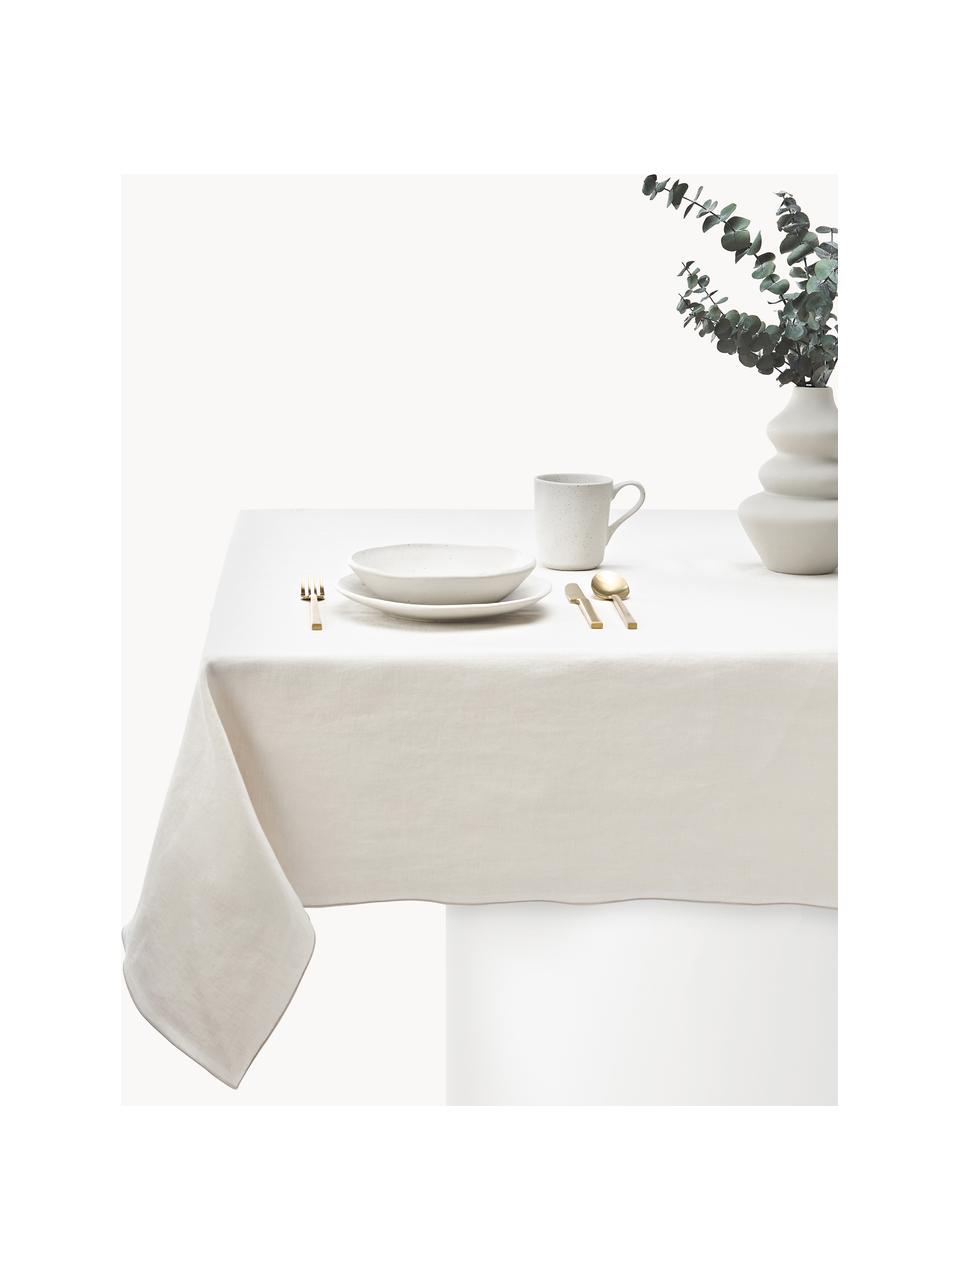 Leinen-Tischdecke Kennedy mit Umkettelung, 100 % gewaschenes Leinen, European Flax zertifiziert, Off White, 6-8 Personen (B 140 x L 250 cm)